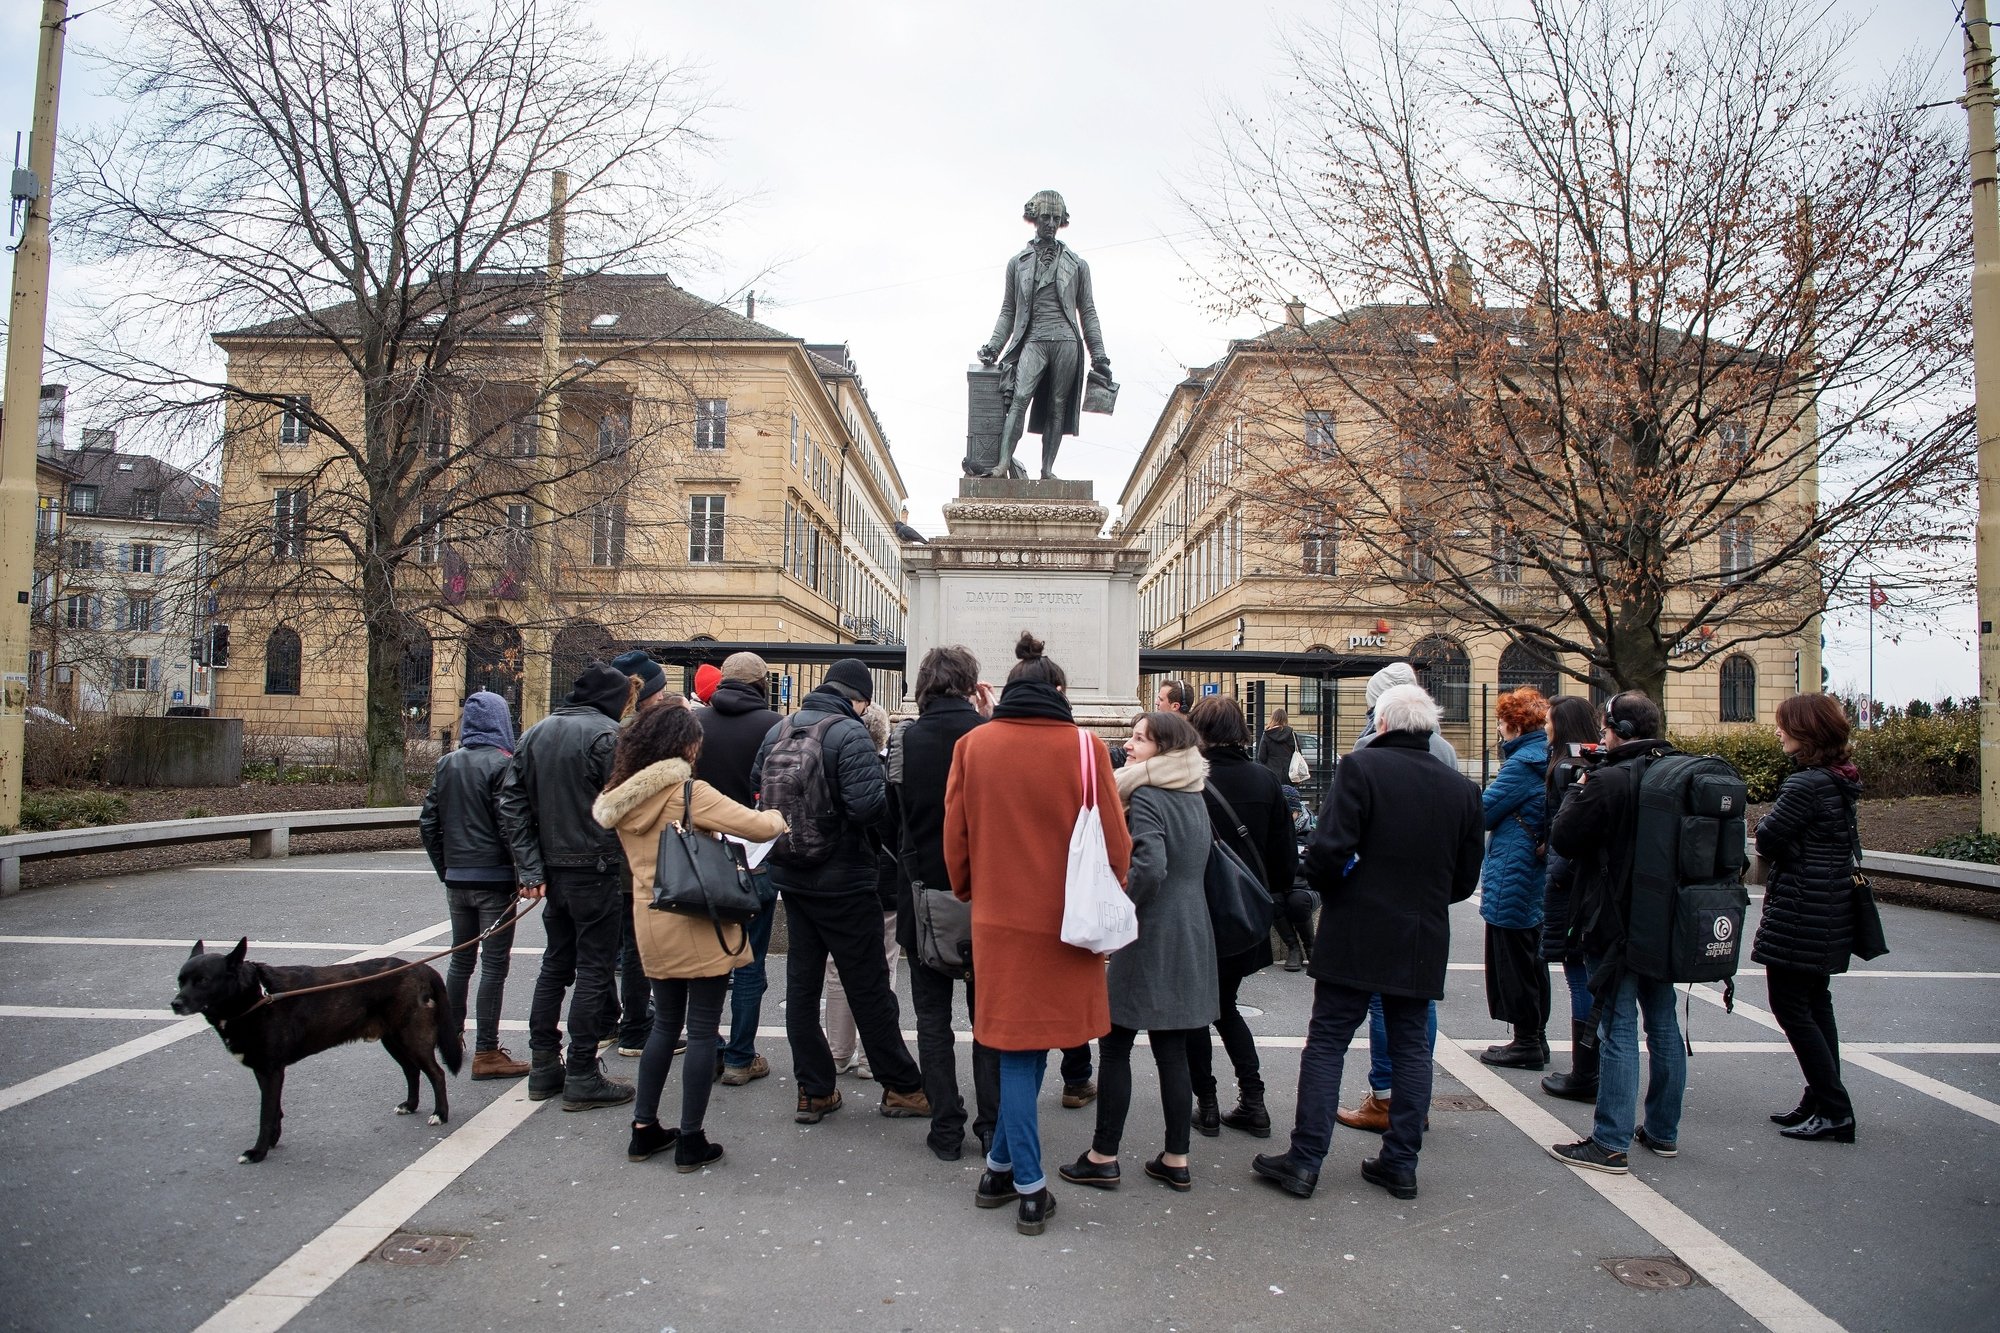 "Pourquoi érige-t-on des statues?", demande Alaric Kohler.